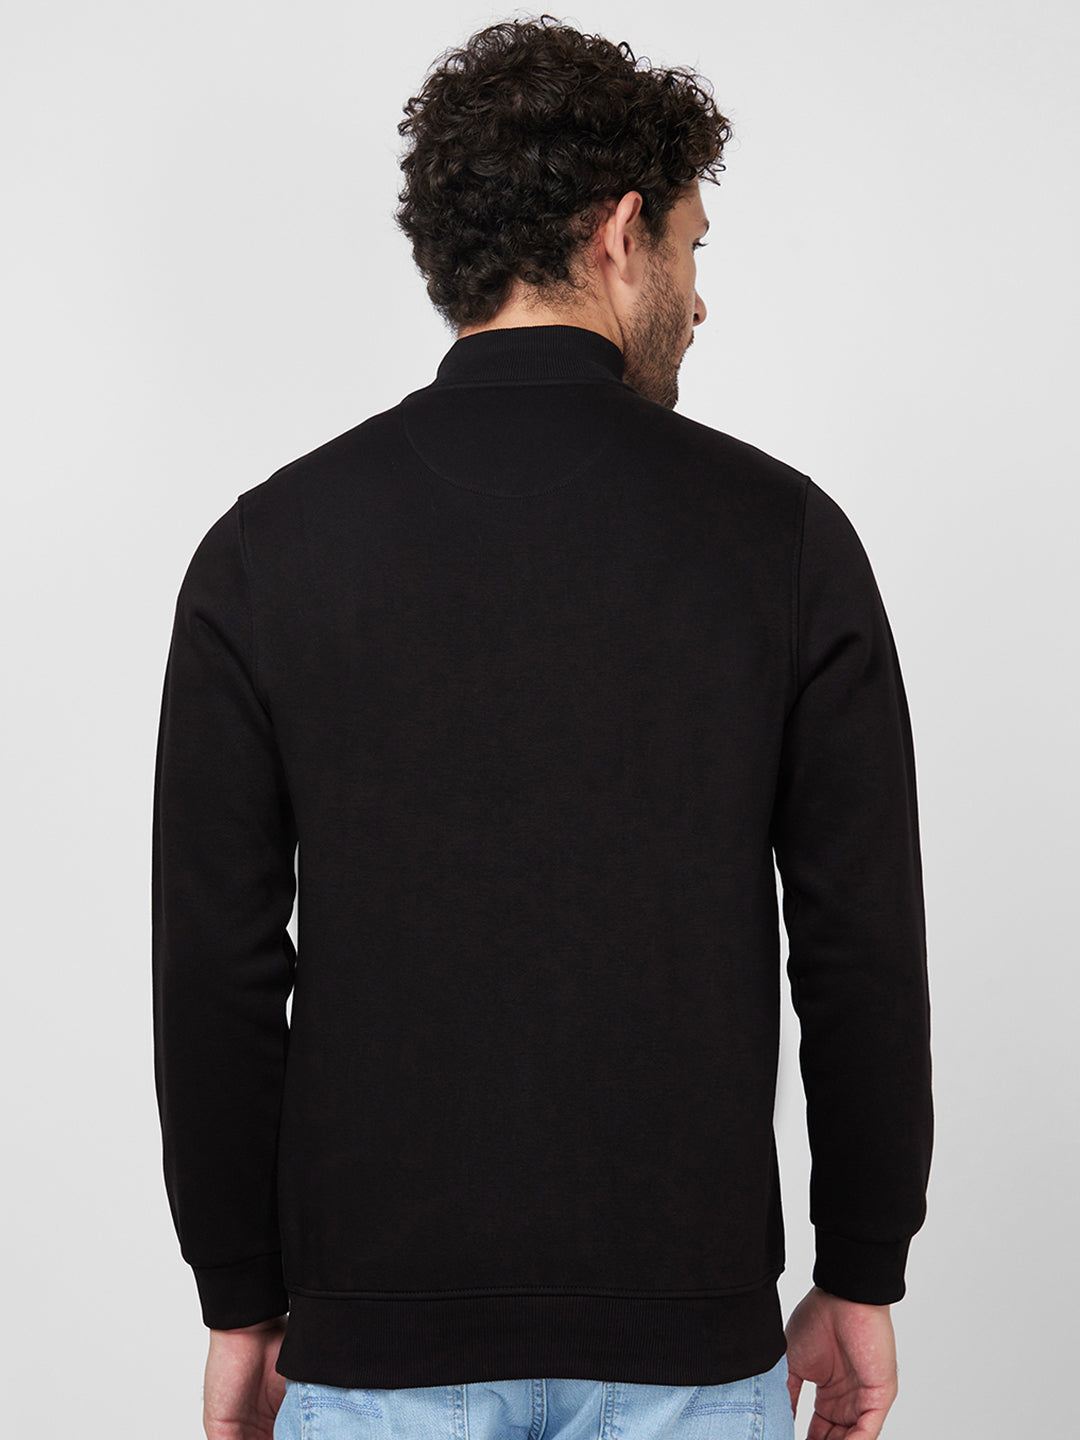 Spykar High Neck Full Sleeve Black Sweatshirt For Men